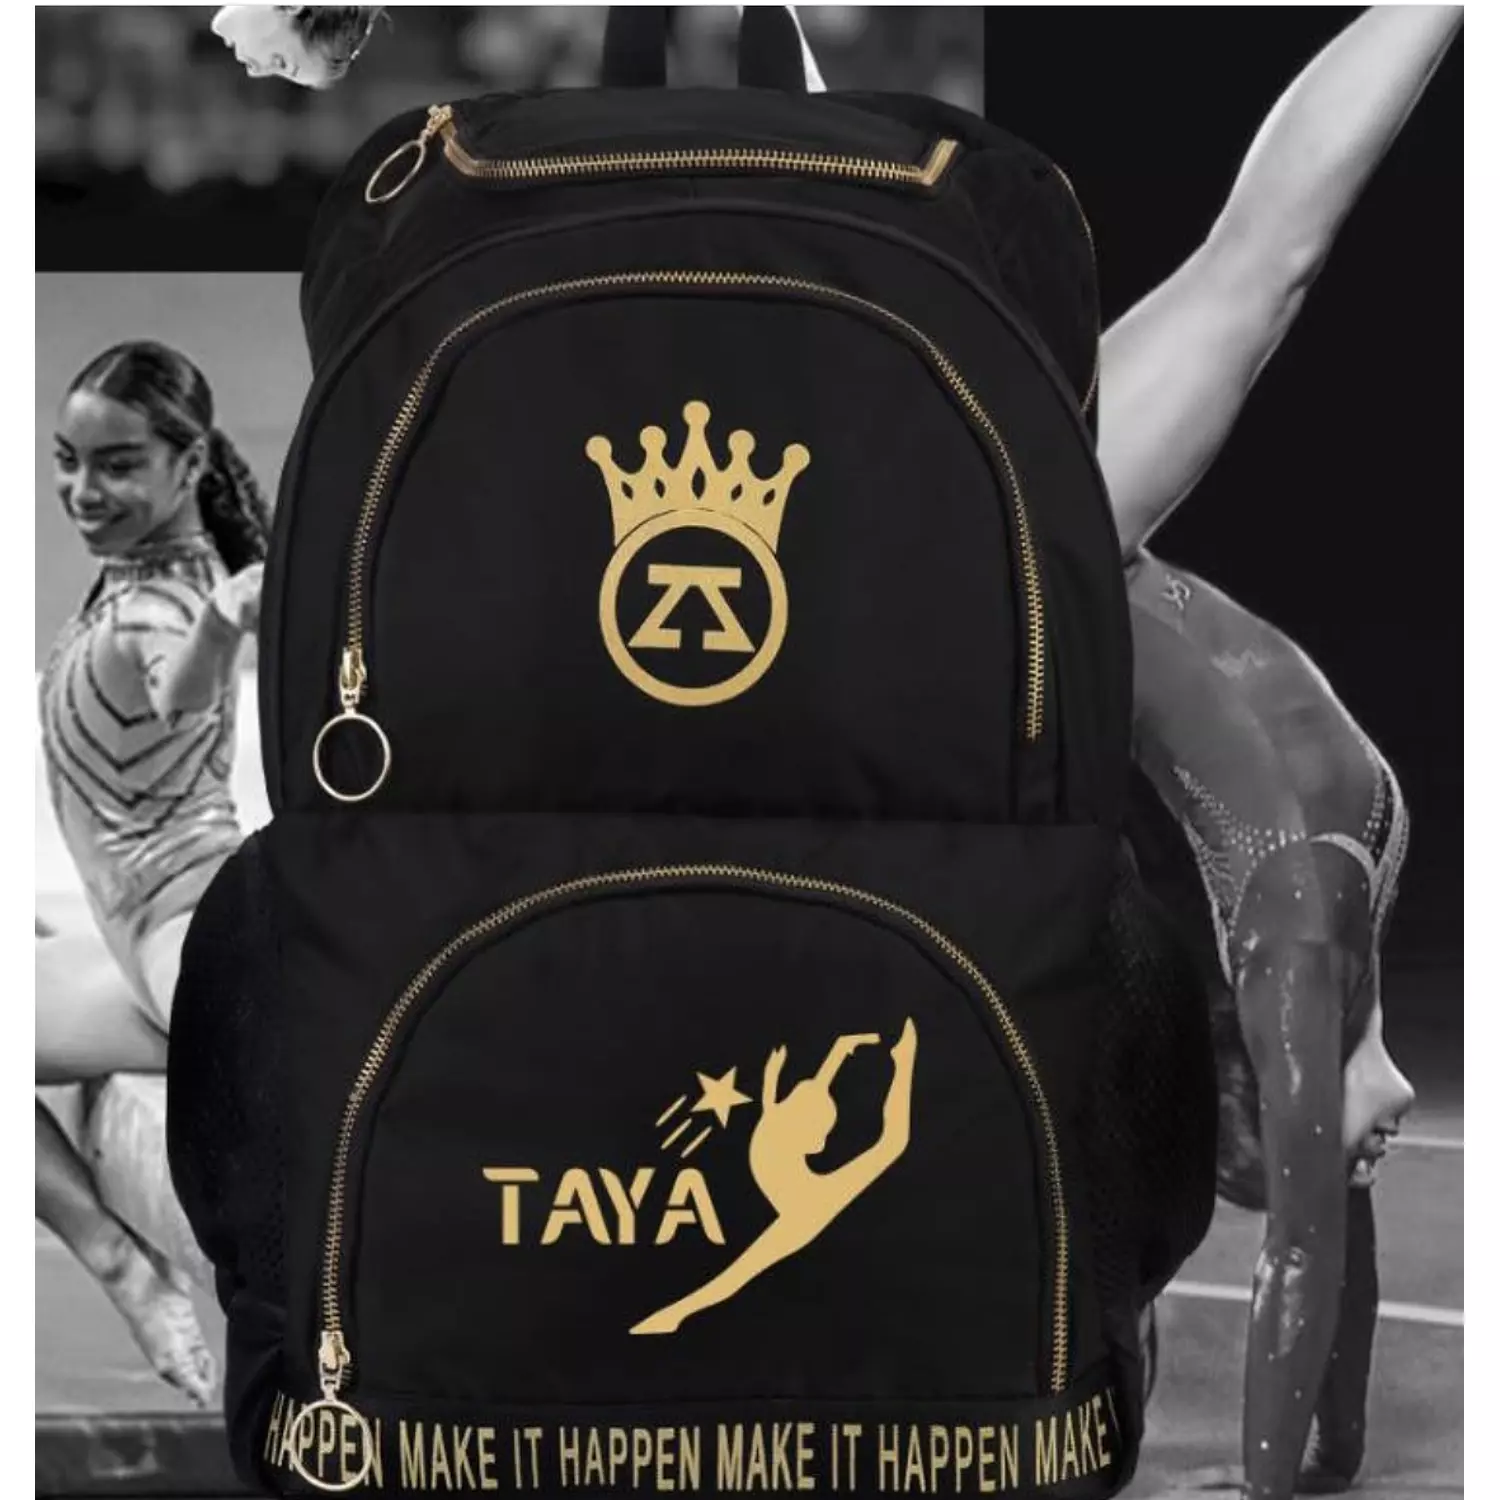 Zoya-Gymnastics Sparkle Backpack hover image